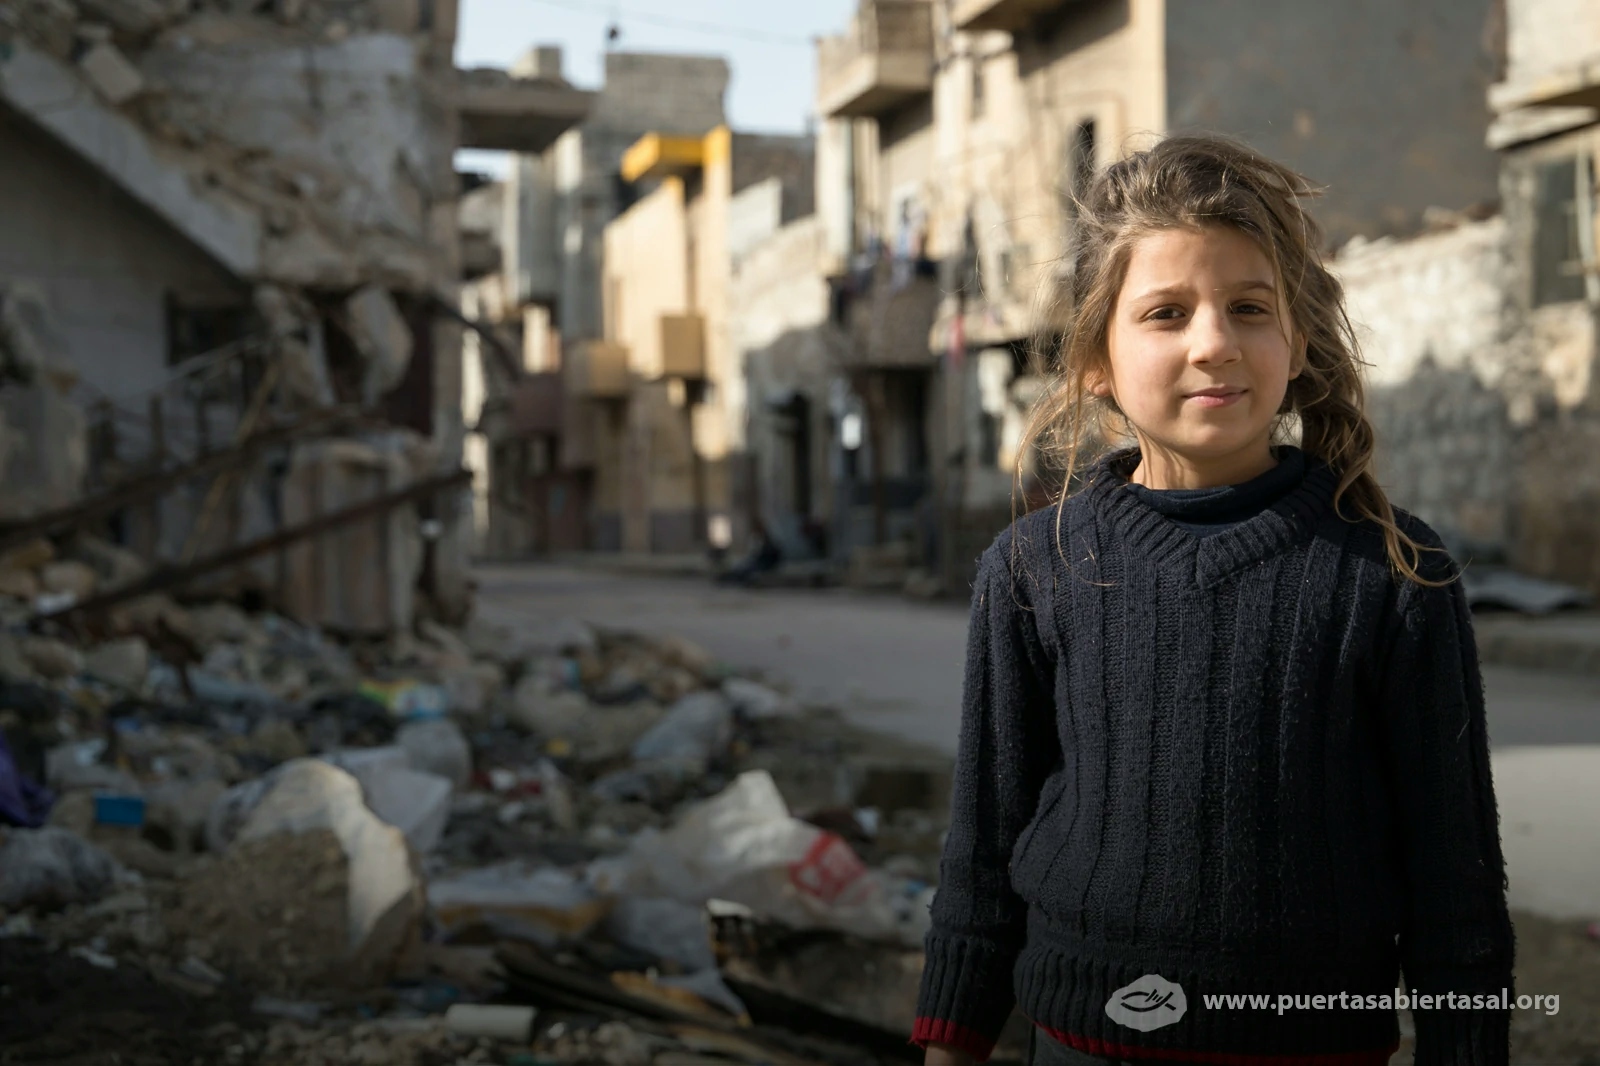 Niña Siria junto a su vecindad. Siria atraviesa la más grande crisis de desplazados en el mundo